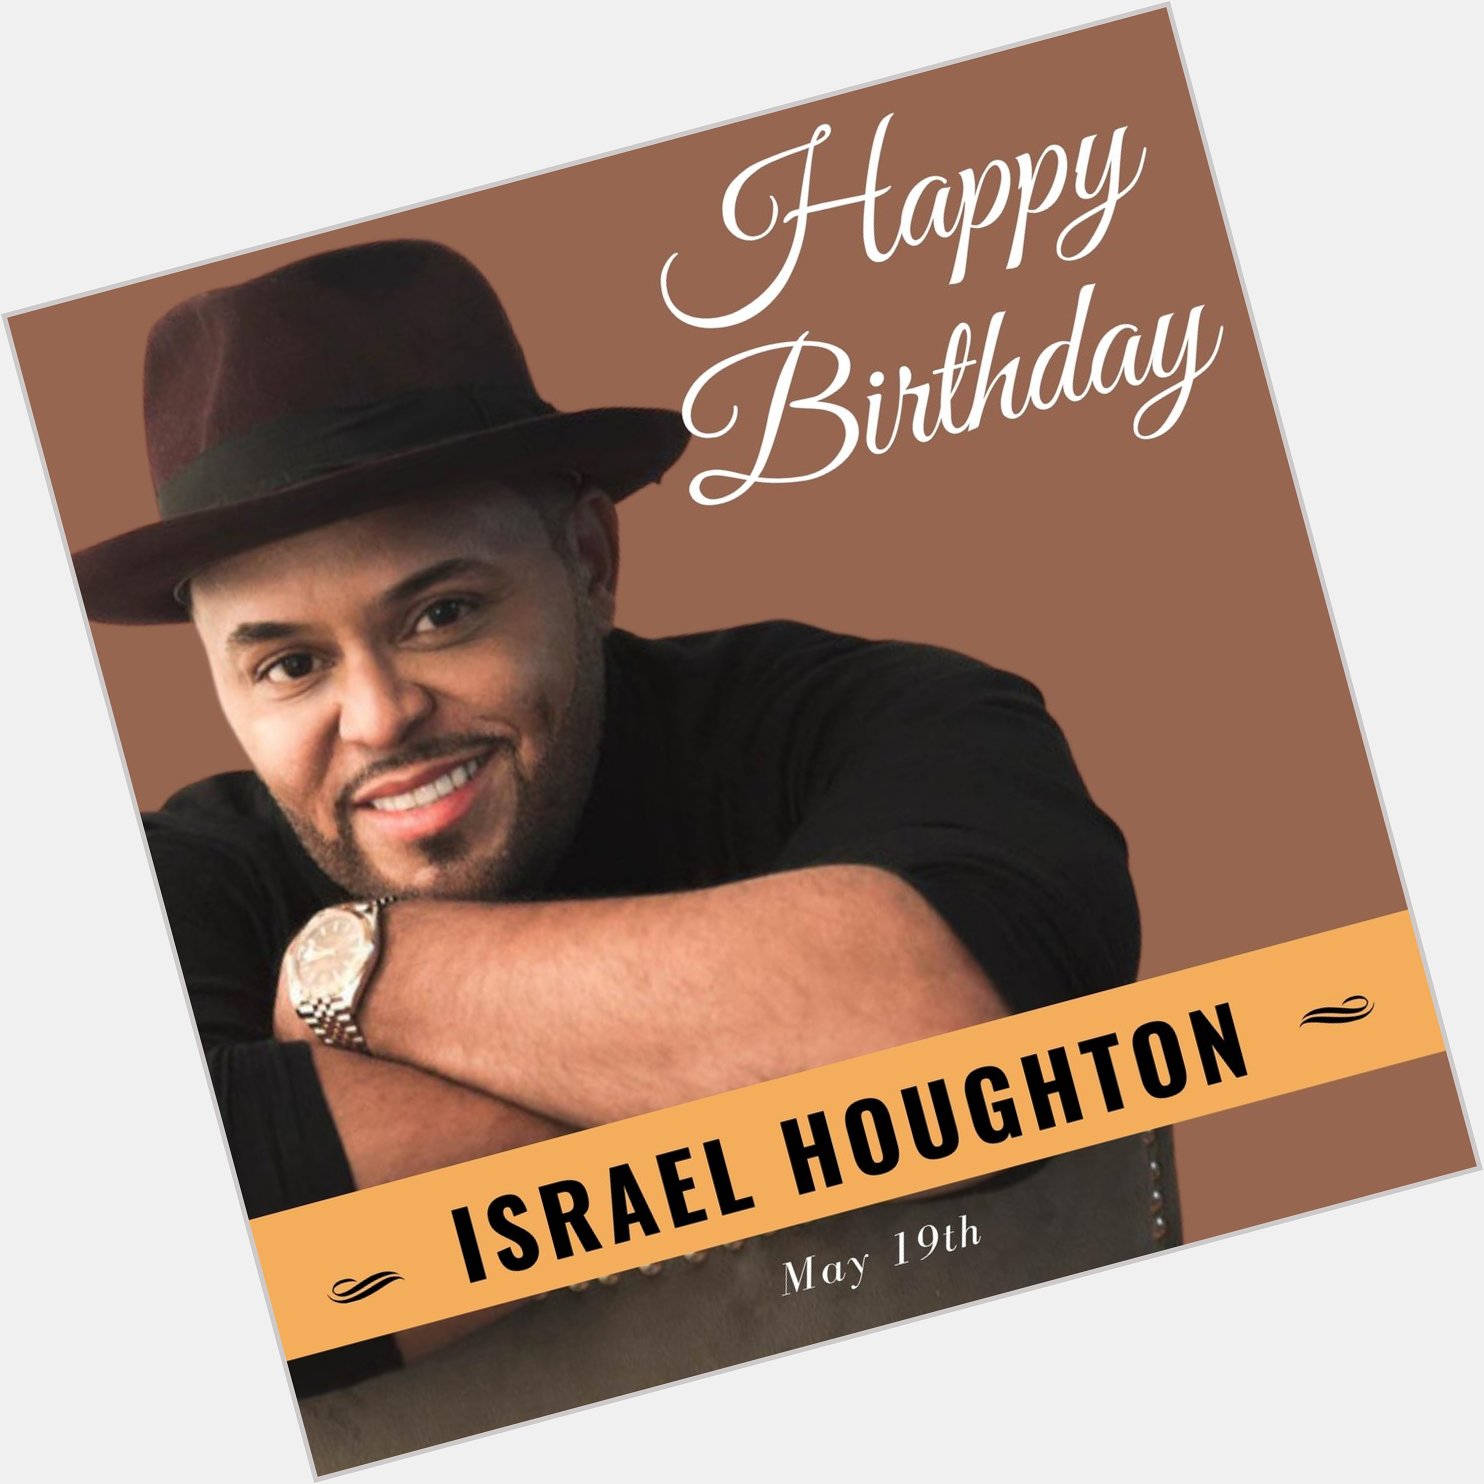 Happy Birthday, Israel Houghton! 